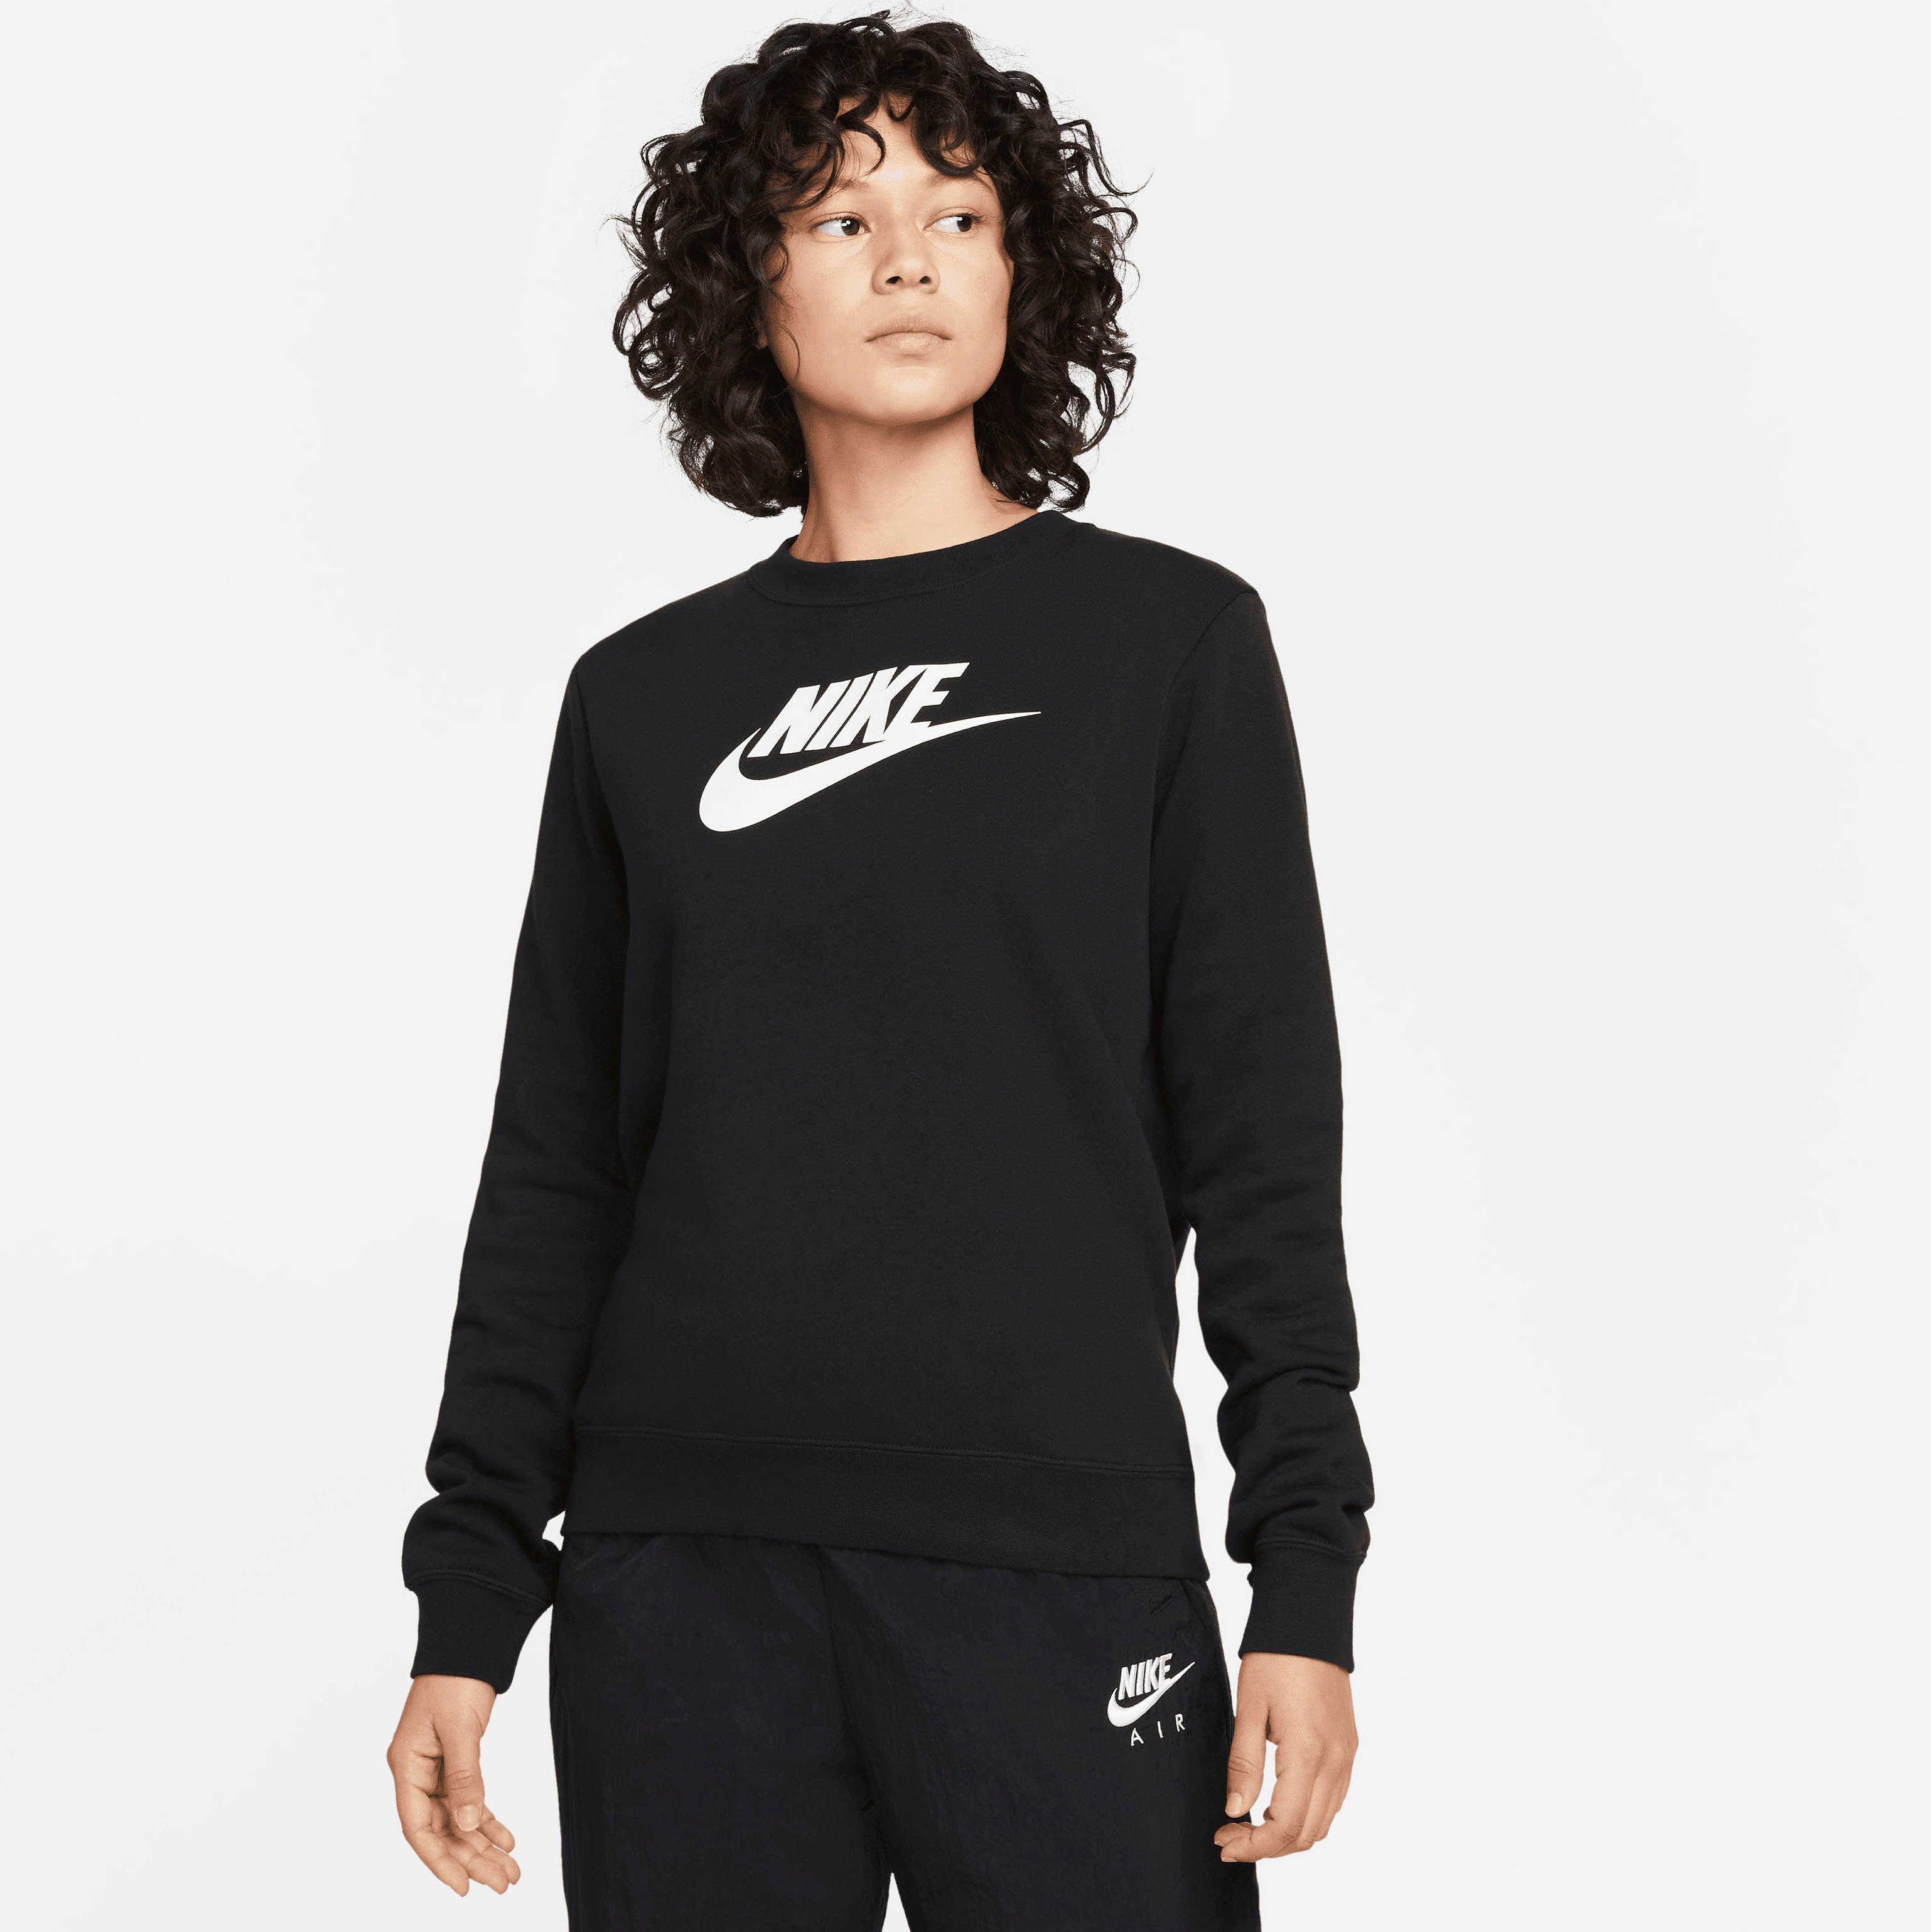 Nike Damen Sweatshirts online kaufen | OTTO